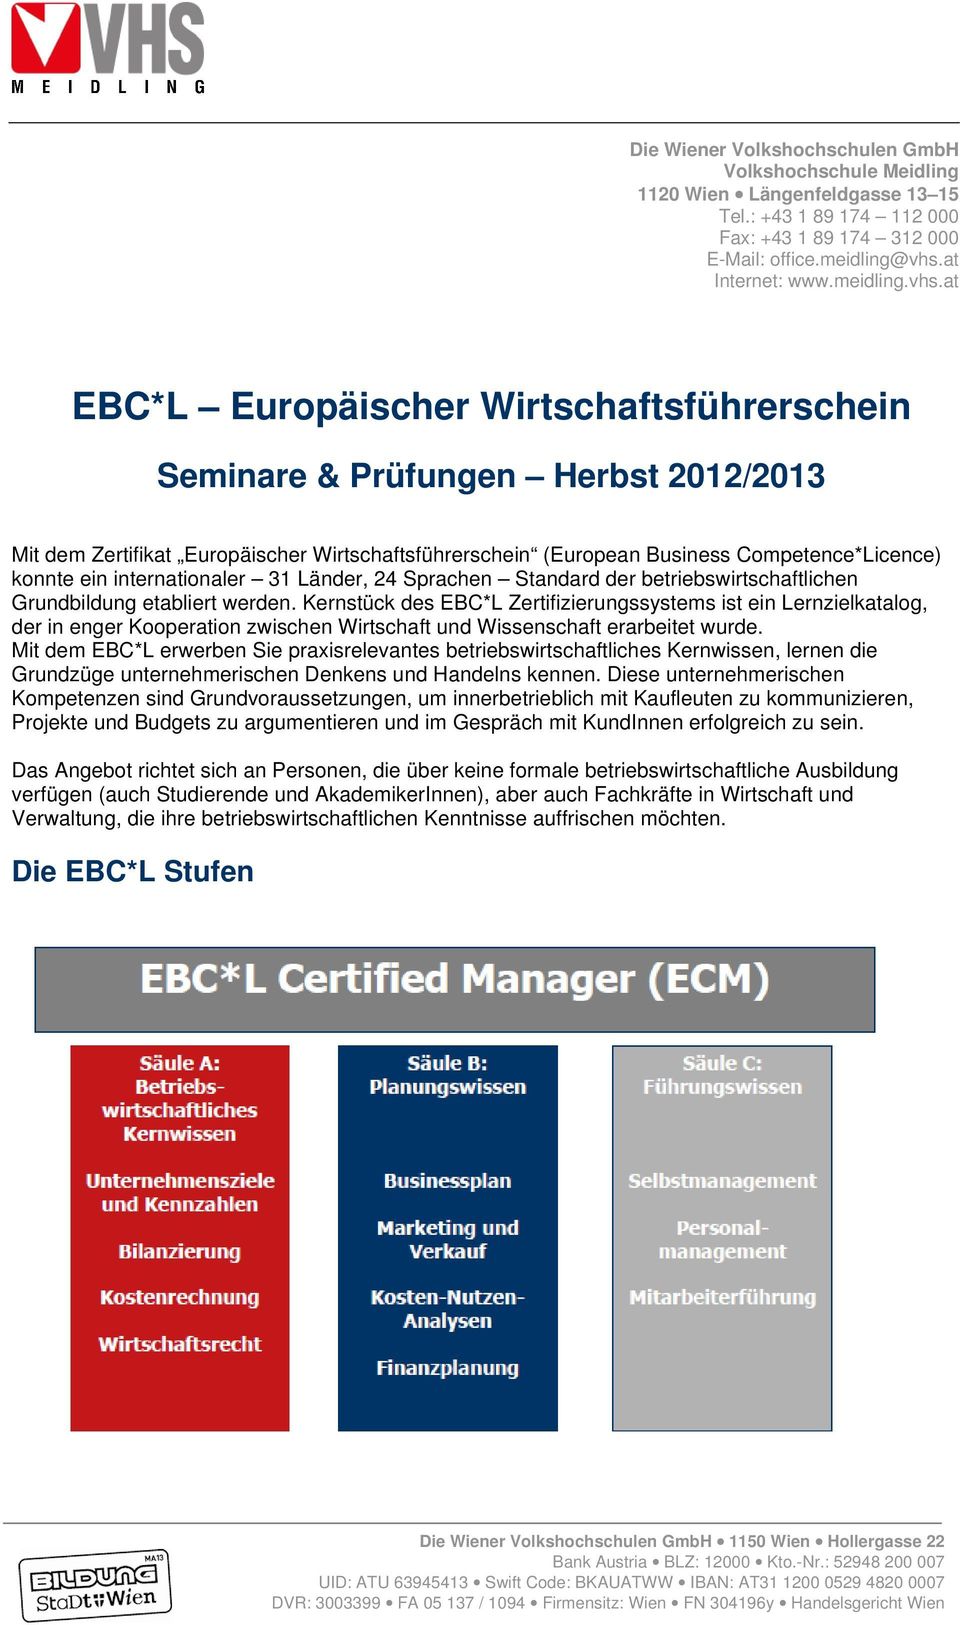 at EBC*L Europäischer Wirtschaftsführerschein Seminare & Prüfungen Herbst 2012/2013 Mit dem Zertifikat Europäischer Wirtschaftsführerschein (European Business Competence*Licence) konnte ein